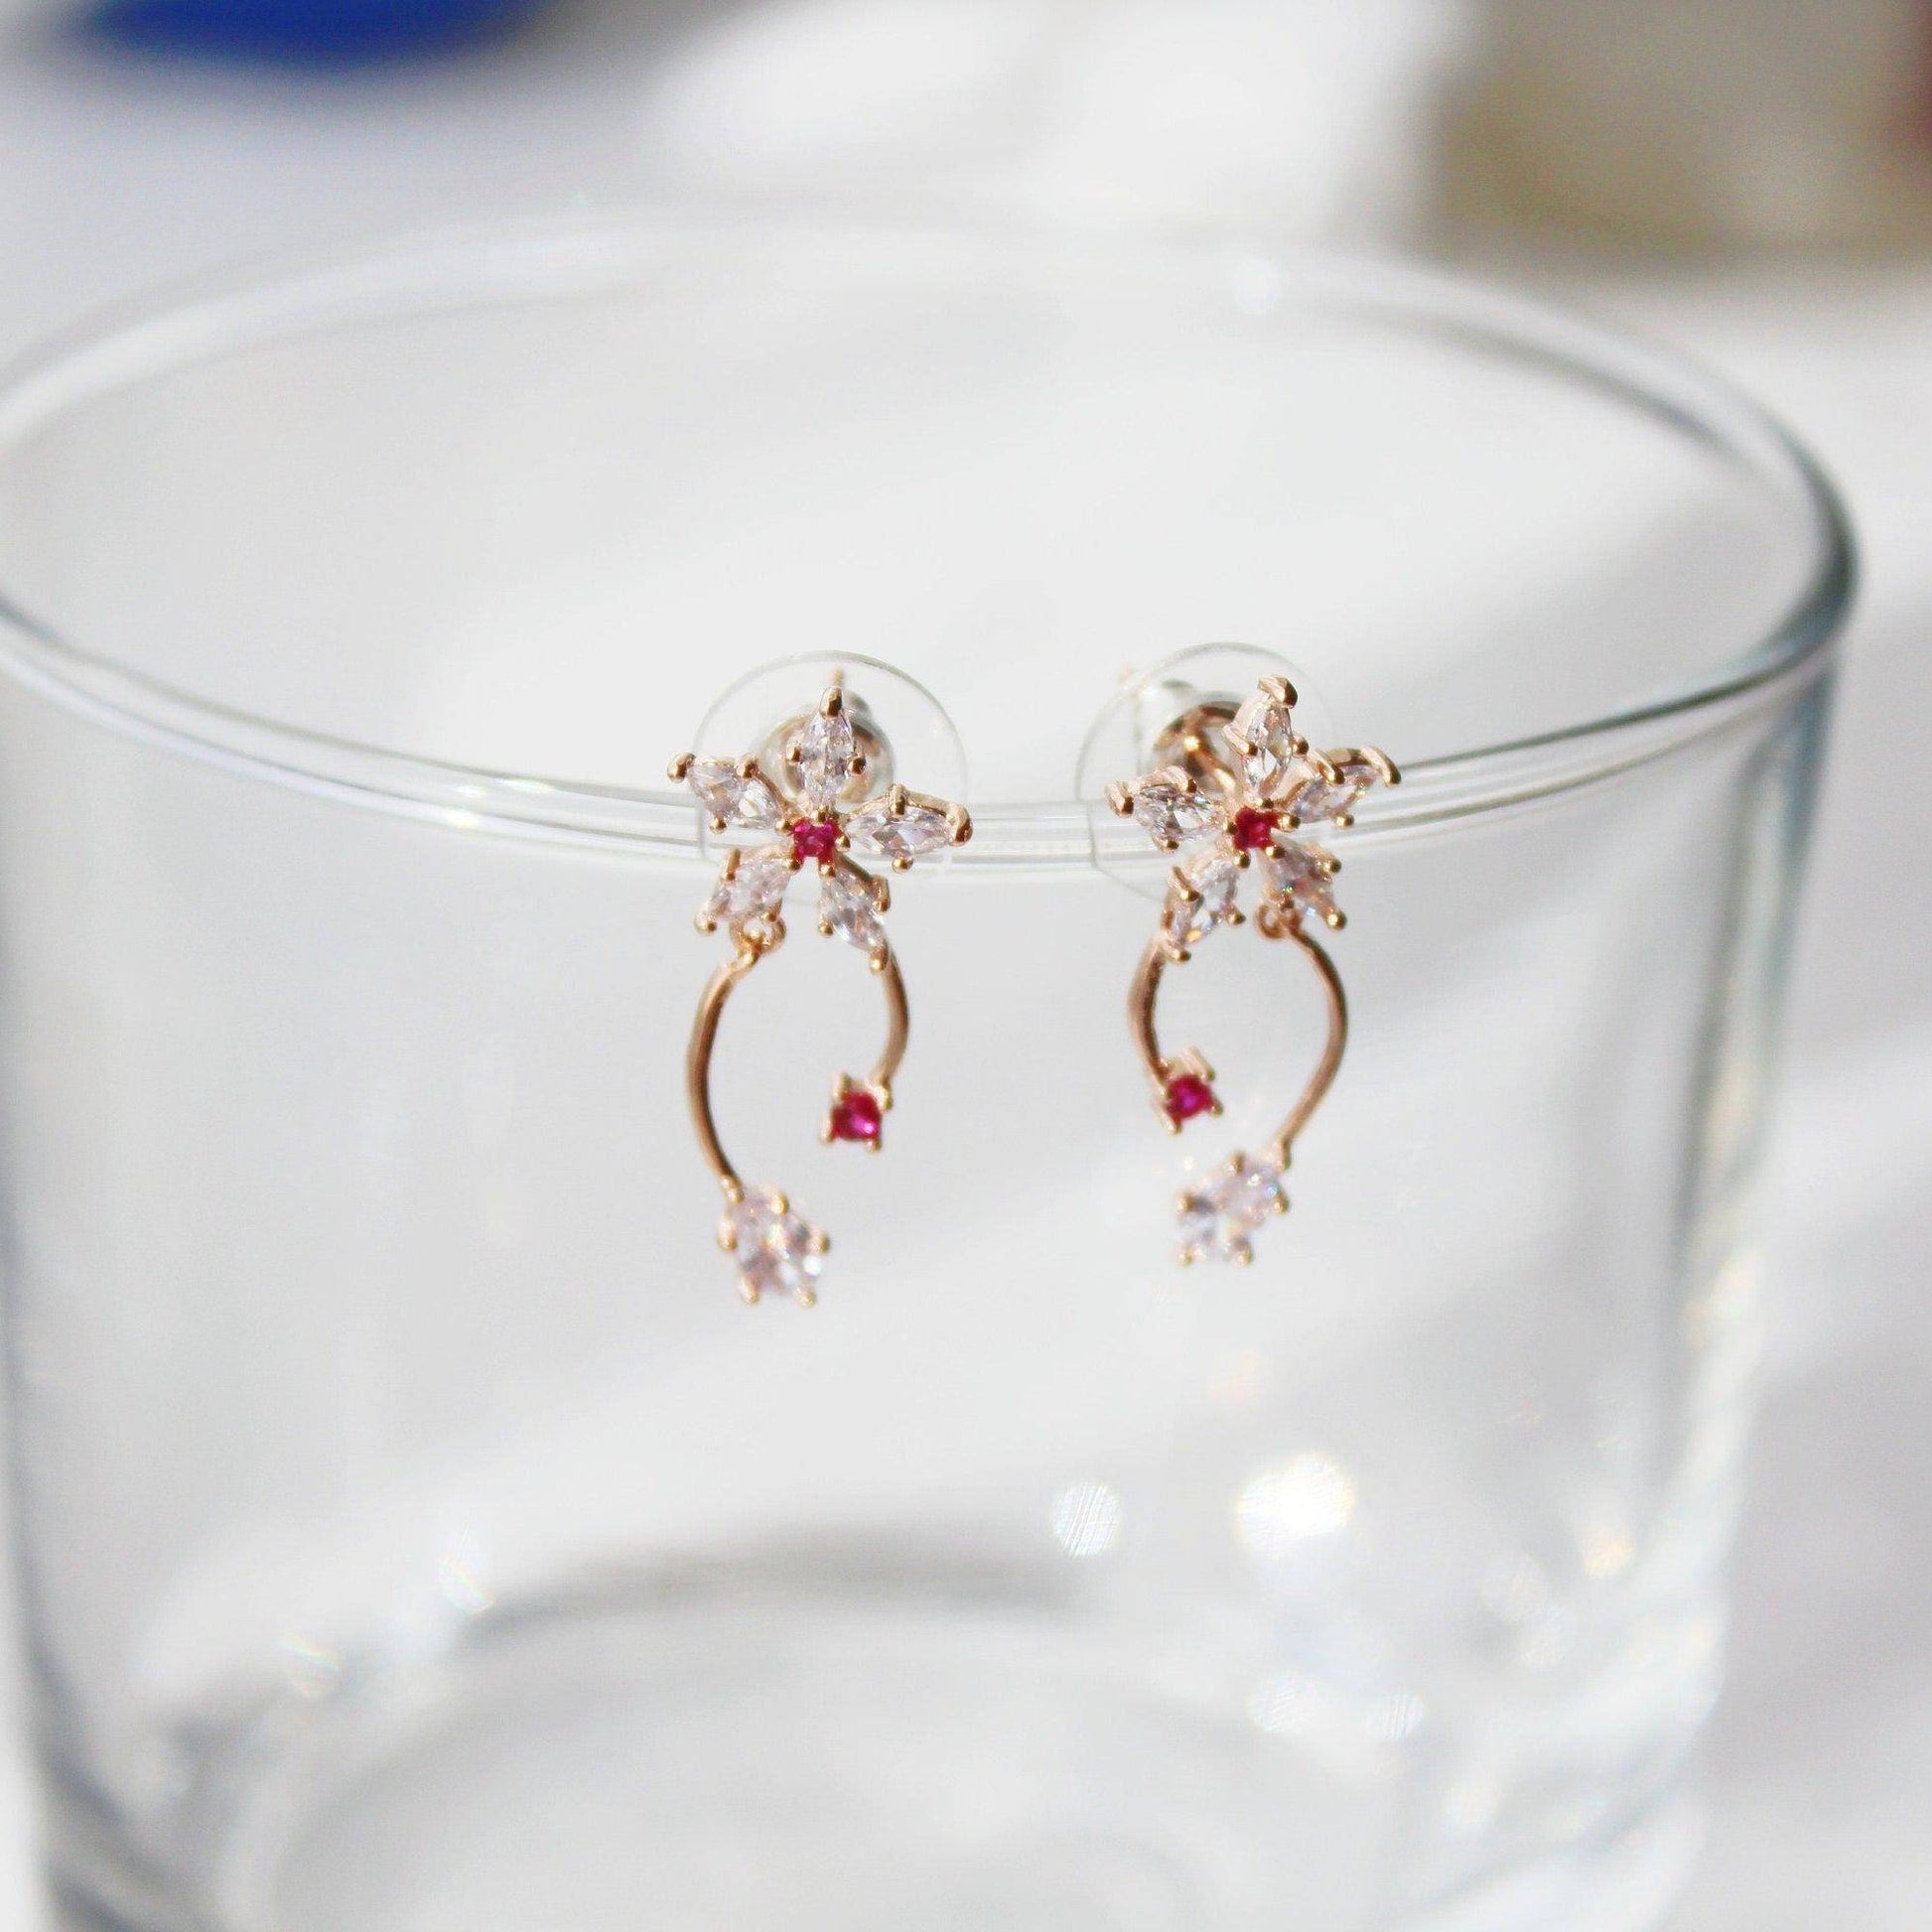 Cypress Vine Flower Earrings - Star Shape Flower with Red Crystal Mini Drop Earrings-Ninaouity